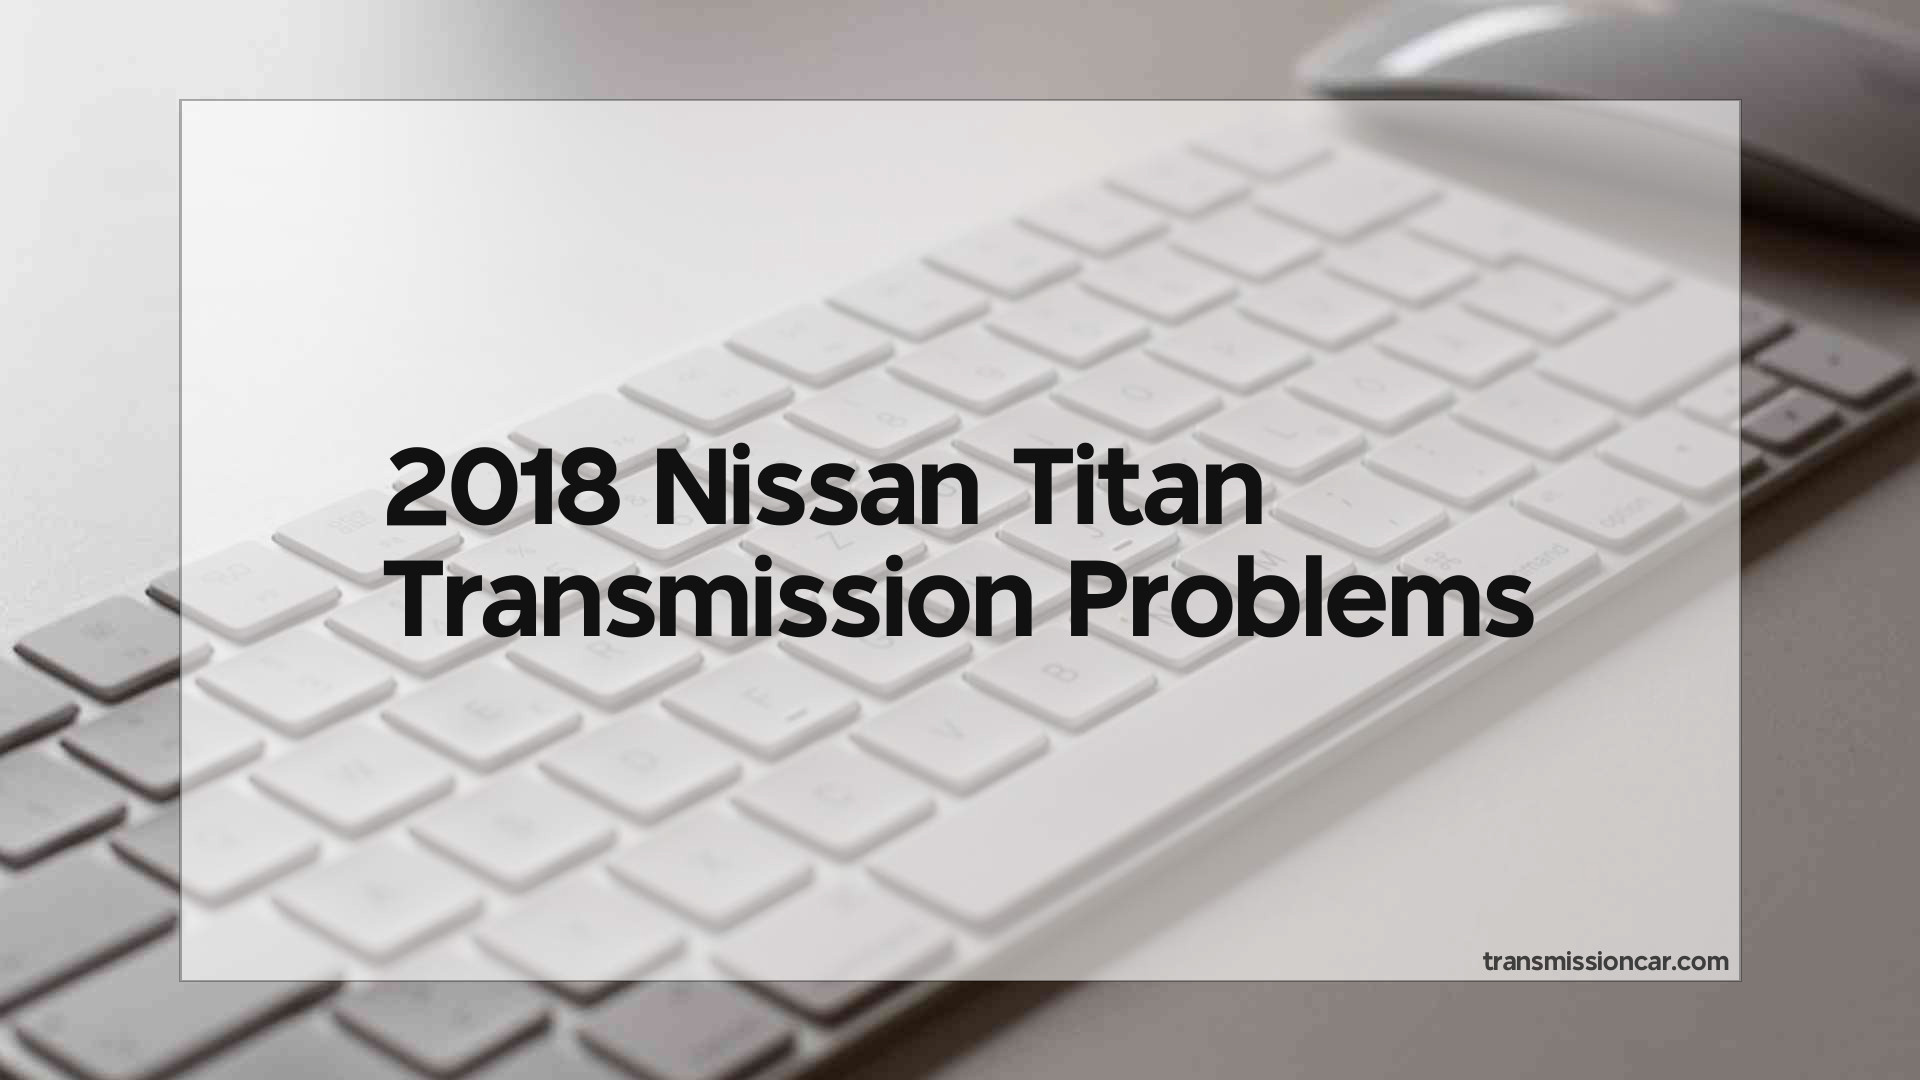 2018 Nissan Titan Transmission Problems Car Transmission Guide